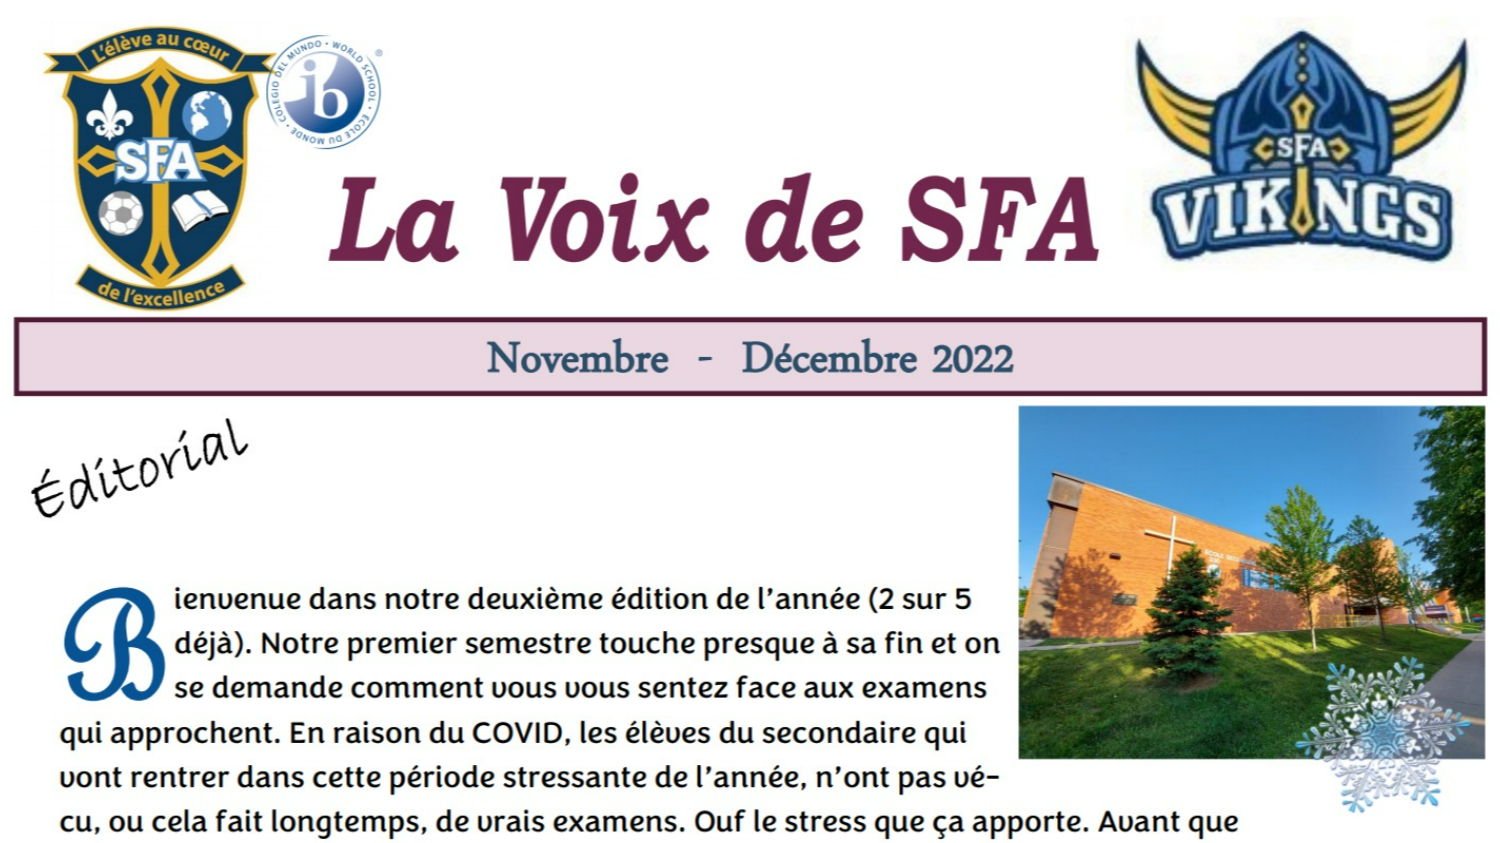 Image couverture du joural de la Voix de SFA du mois de Novembre-Décembre